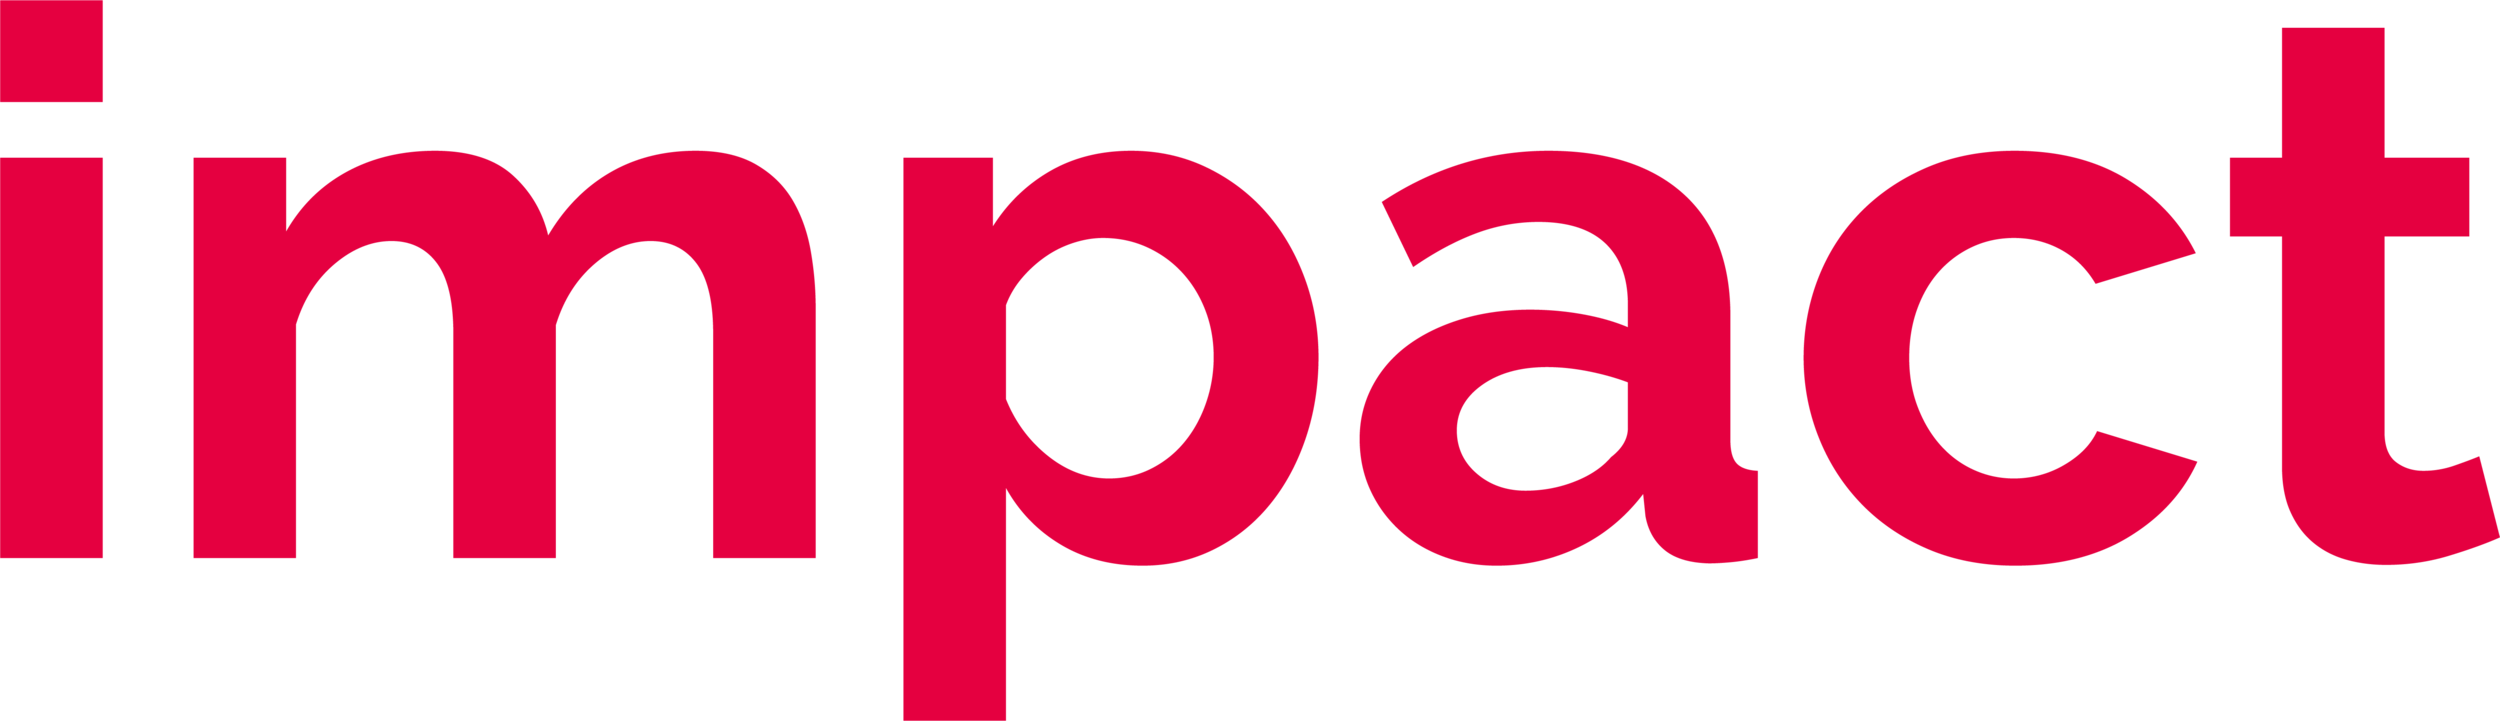 Impact_logo.png